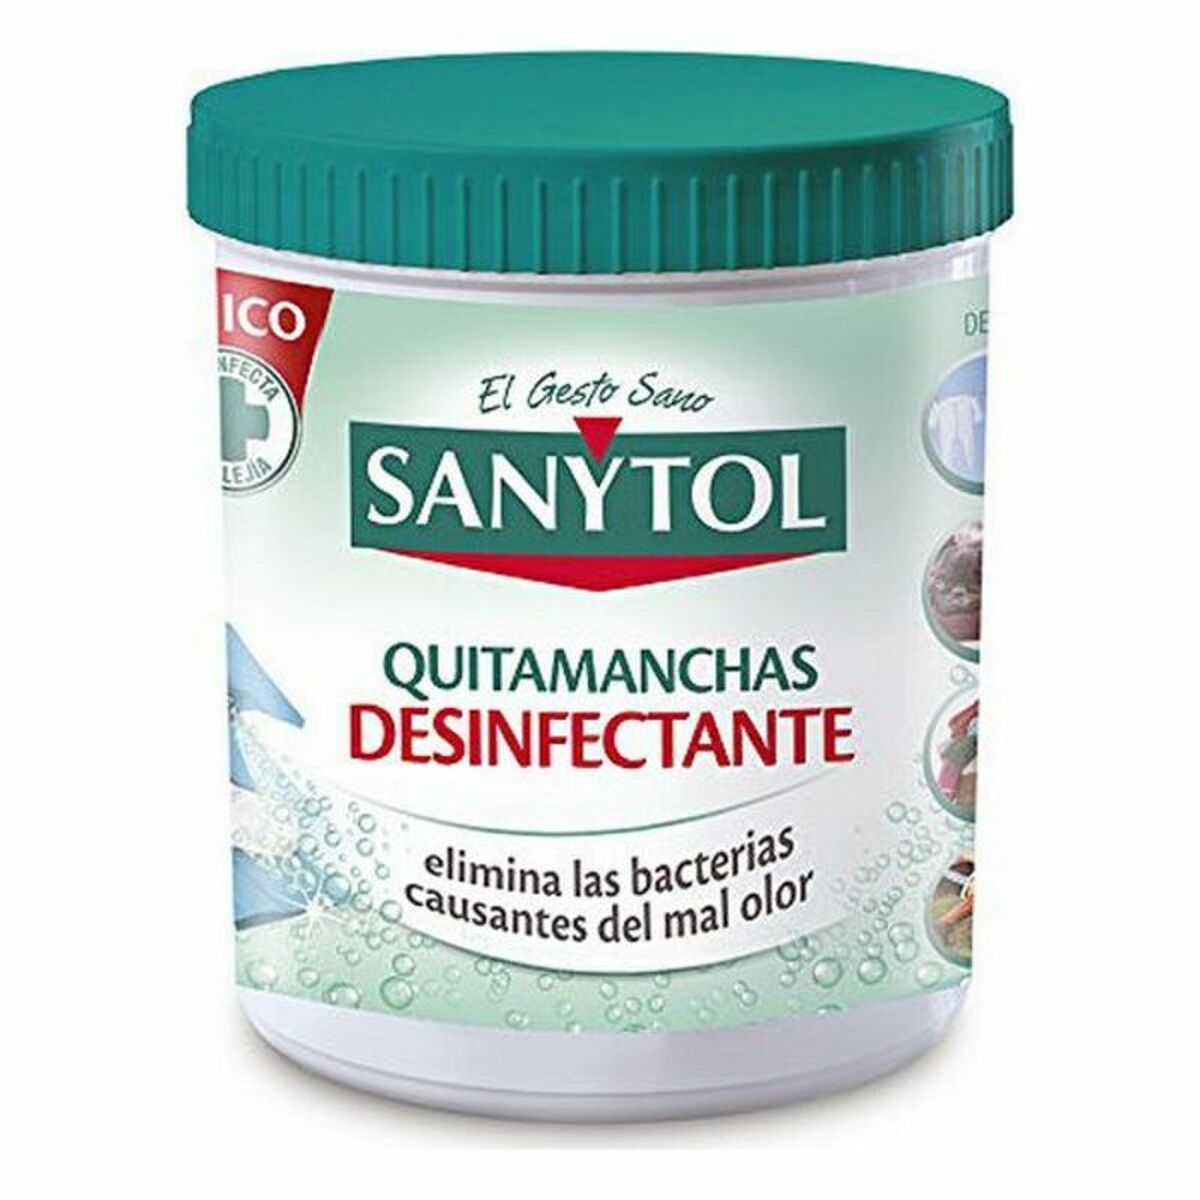 Remover barvení sanytol dezinfekční text (450 g)